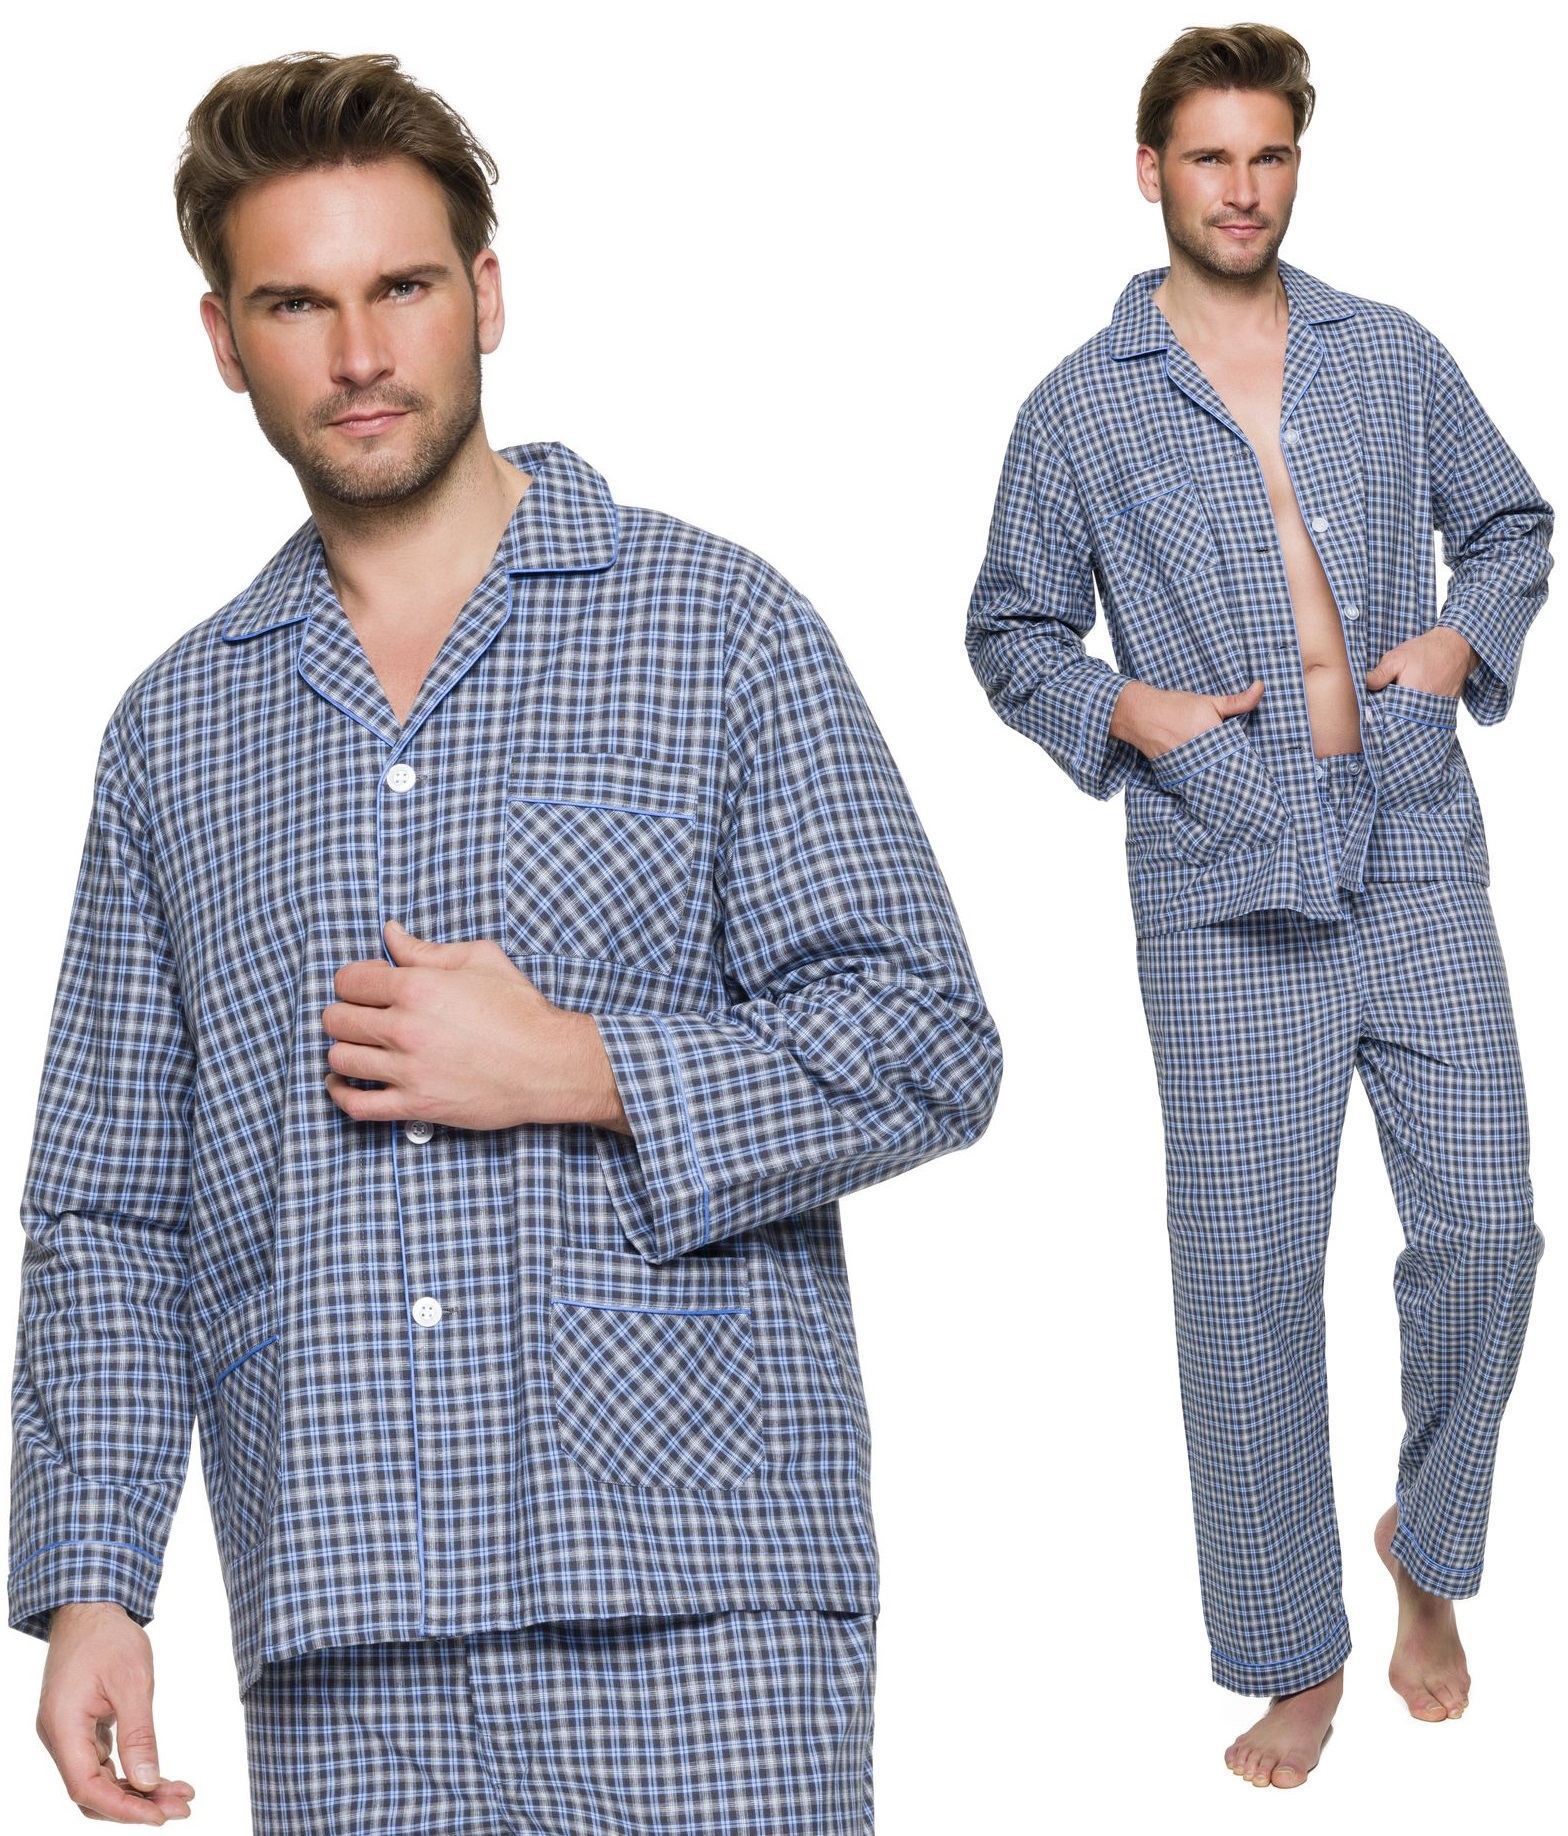 Фланелевые мужские пижамы. Пижама мужская. Клетчатая пижама мужская. Мужская пижама в клетку. Пижама мужская фланелевая.